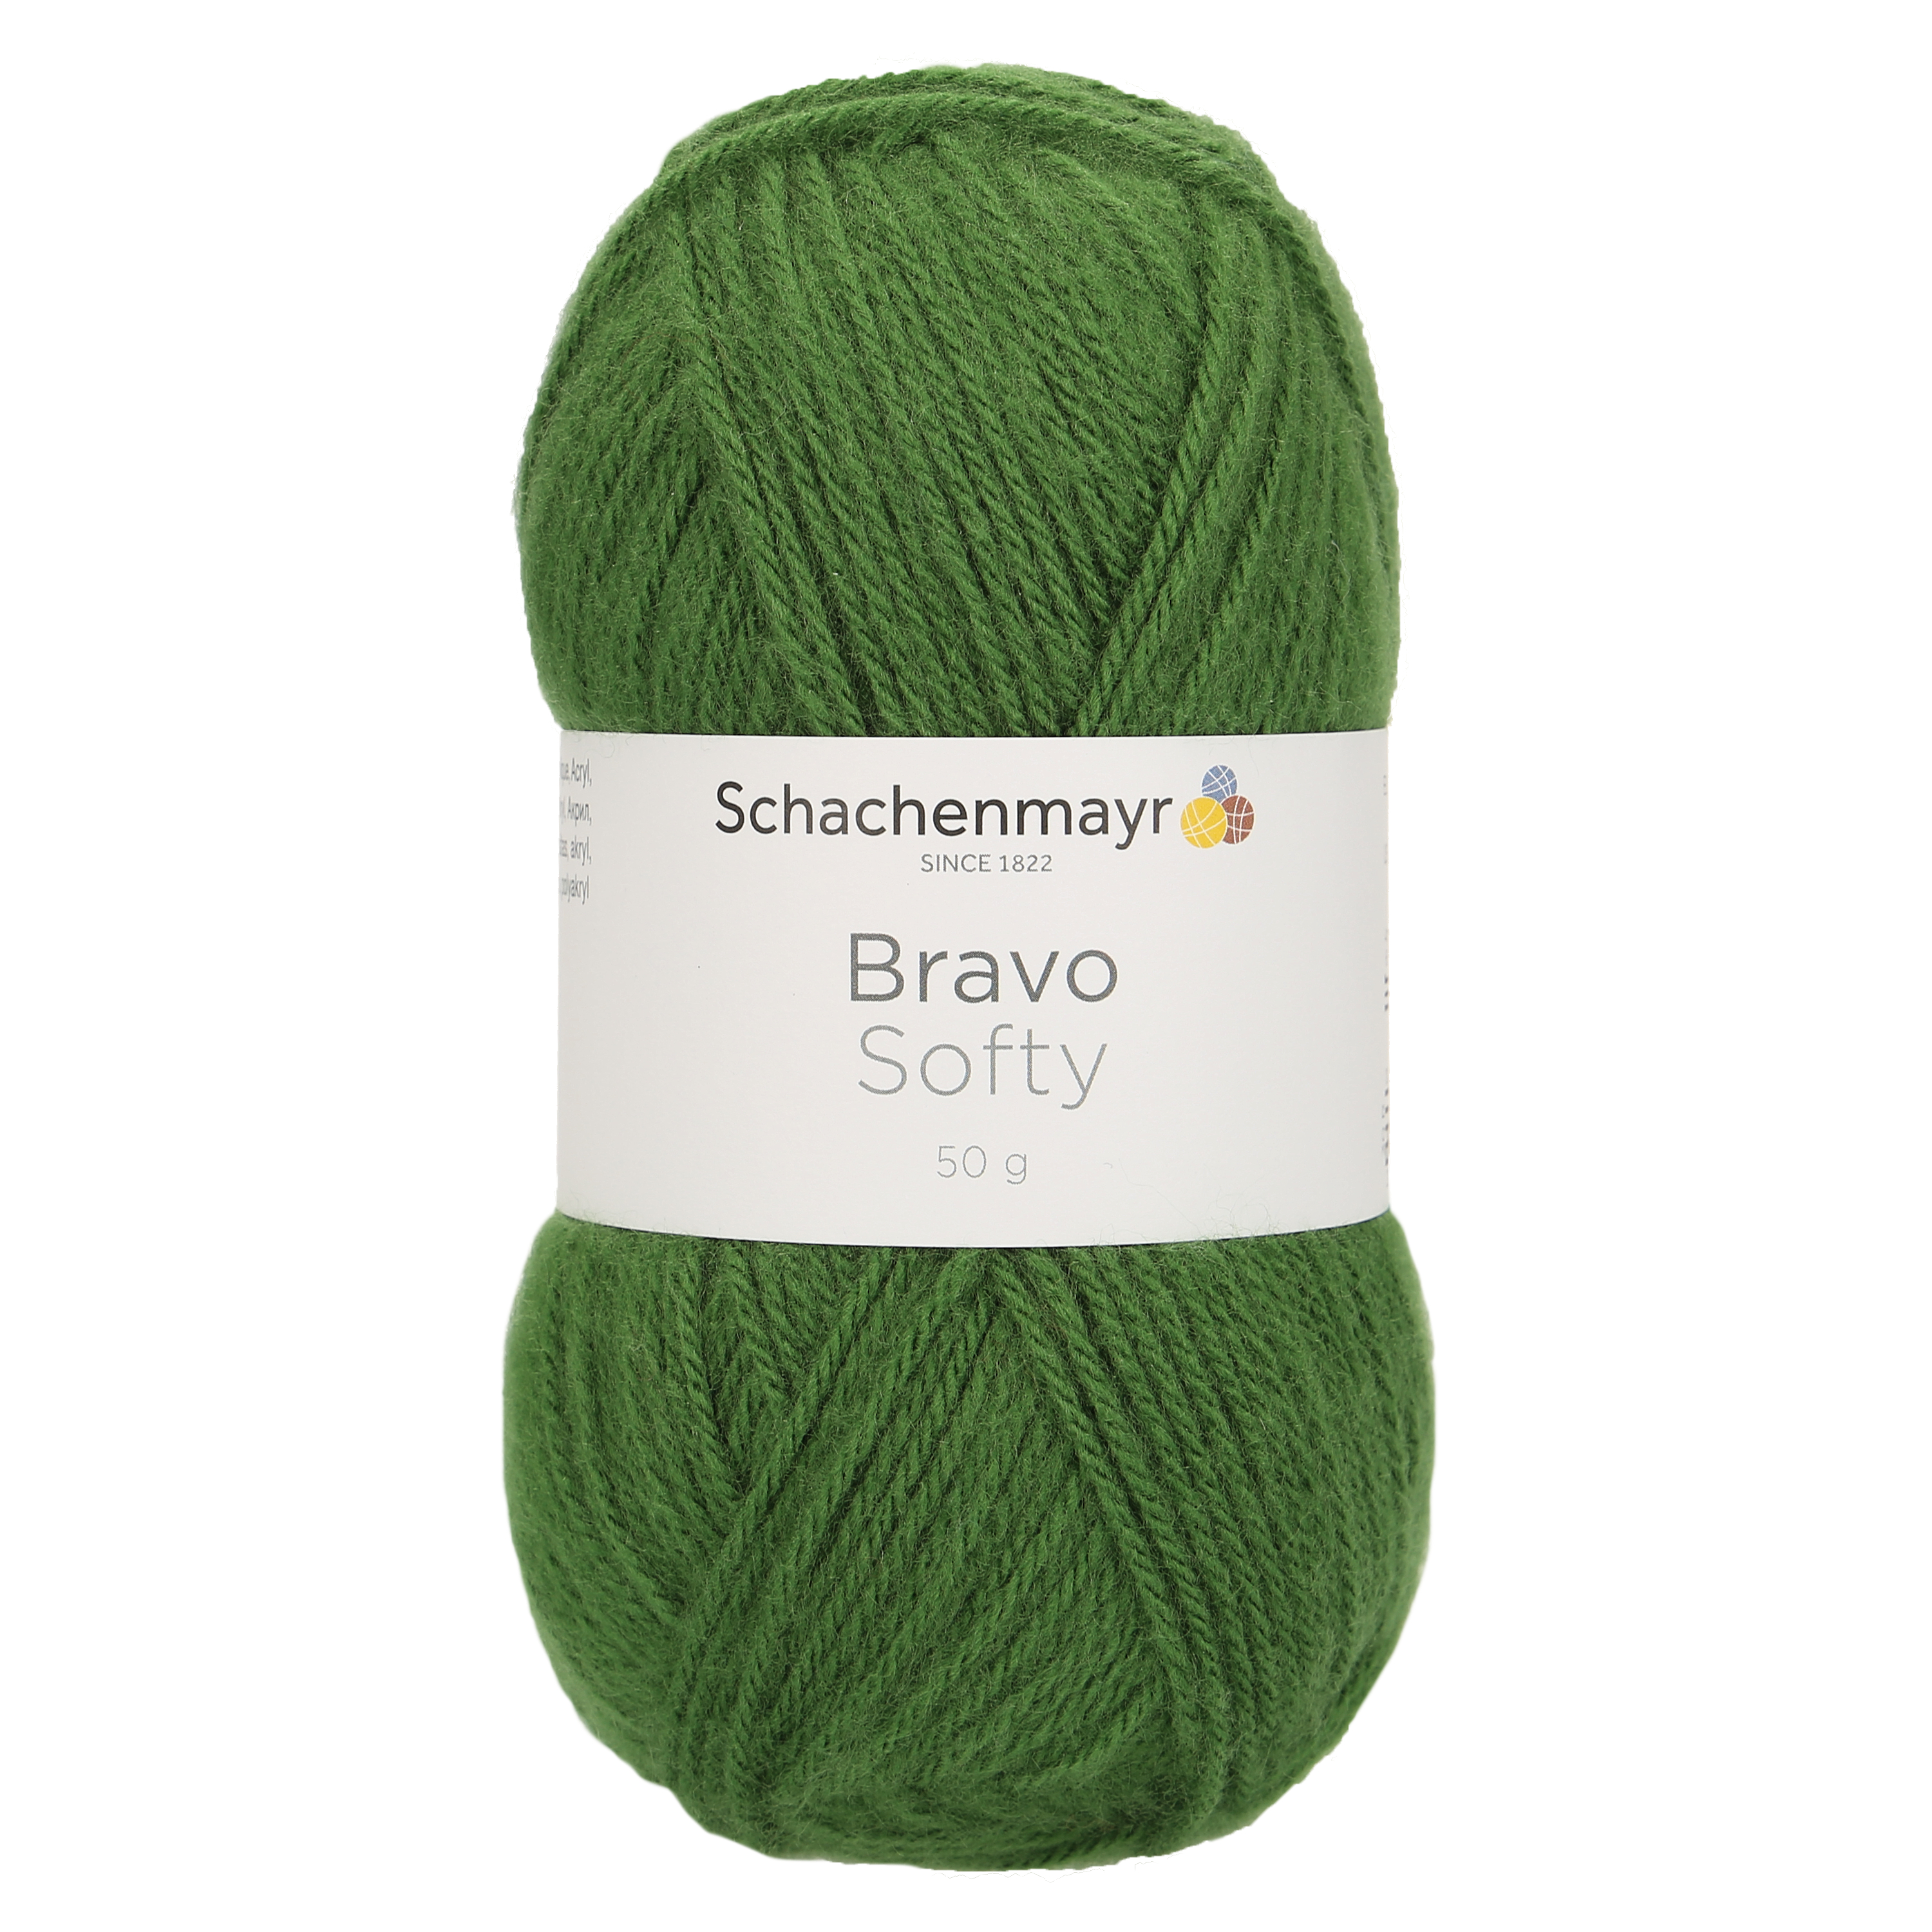 Bravo Softy szöszös akrilfonal páfrány zöld 08191